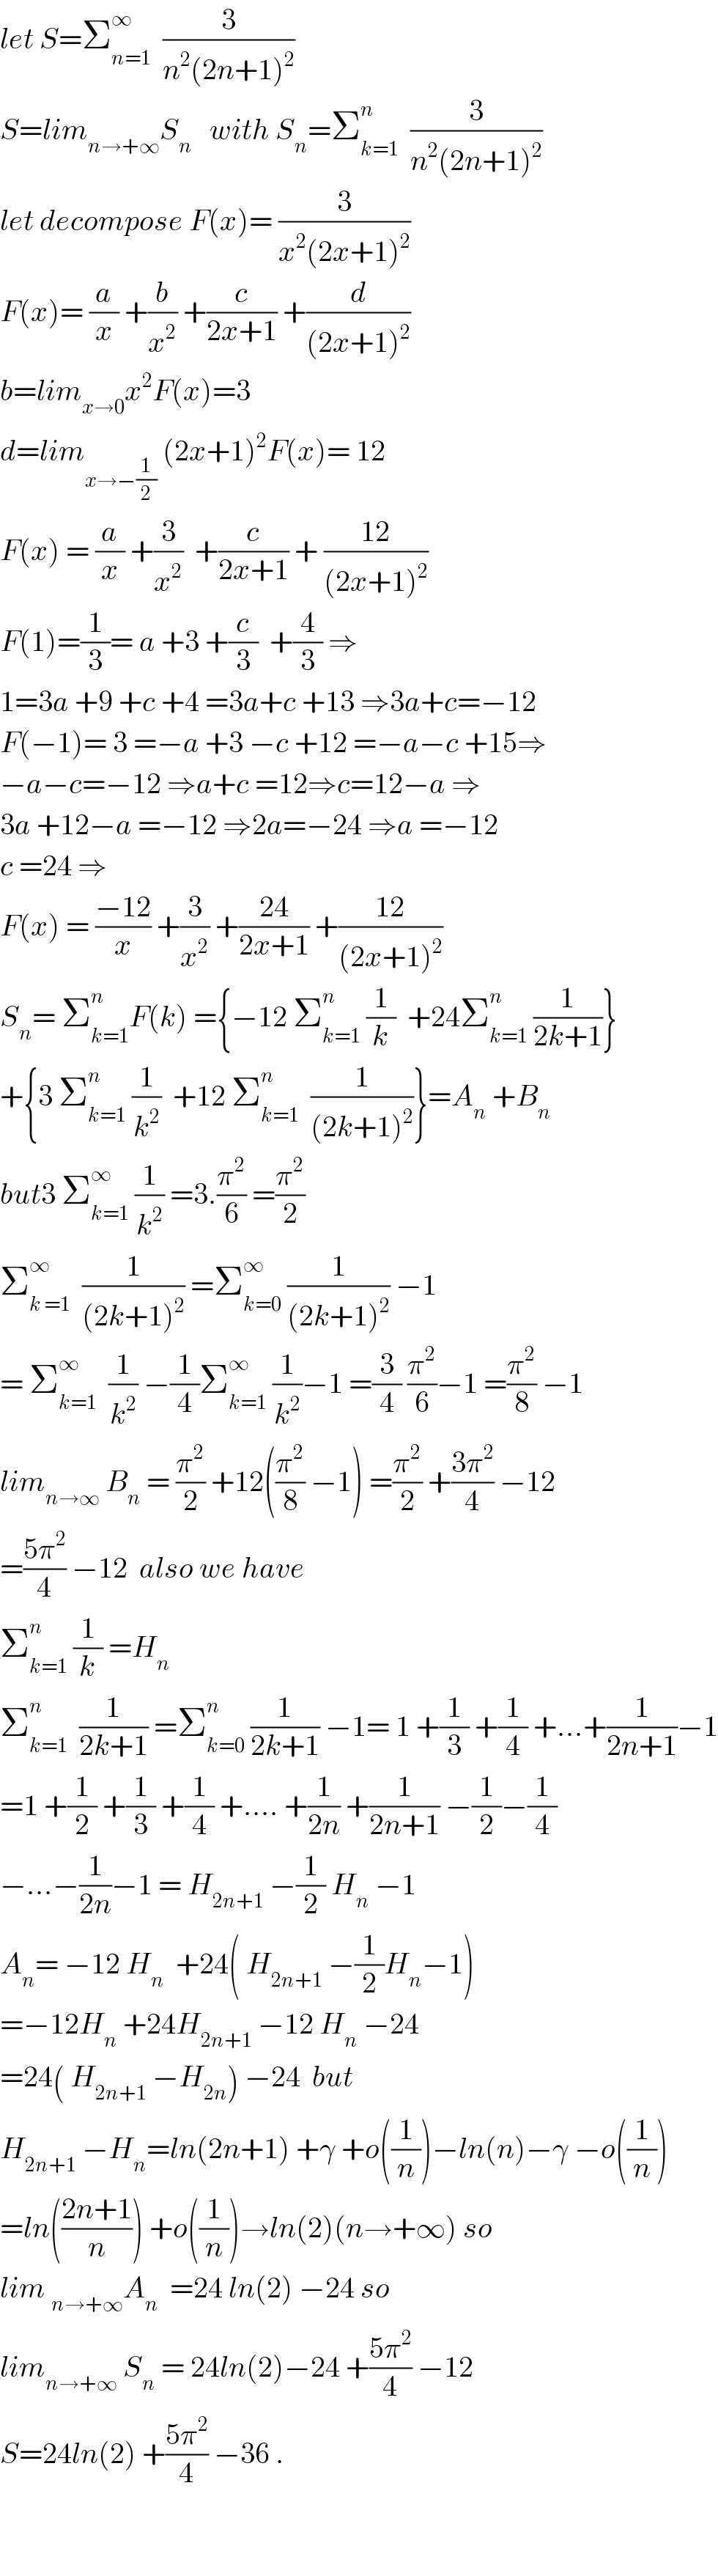 let S=Σ_(n=1) ^∞   (3/(n^2 (2n+1)^2 ))  S=lim_(n→+∞) S_n    with S_n =Σ_(k=1) ^n   (3/(n^2 (2n+1)^2 ))  let decompose F(x)= (3/(x^2 (2x+1)^2 ))  F(x)= (a/x) +(b/x^2 ) +(c/(2x+1)) +(d/((2x+1)^2 ))  b=lim_(x→0) x^2 F(x)=3  d=lim_(x→−(1/2))  (2x+1)^2 F(x)= 12  F(x) = (a/x) +(3/x^2 )  +(c/(2x+1)) + ((12)/((2x+1)^2 ))  F(1)=(1/3)= a +3 +(c/3)  +(4/3) ⇒  1=3a +9 +c +4 =3a+c +13 ⇒3a+c=−12  F(−1)= 3 =−a +3 −c +12 =−a−c +15⇒  −a−c=−12 ⇒a+c =12⇒c=12−a ⇒  3a +12−a =−12 ⇒2a=−24 ⇒a =−12  c =24 ⇒  F(x) = ((−12)/x) +(3/x^2 ) +((24)/(2x+1)) +((12)/((2x+1)^2 ))  S_n = Σ_(k=1) ^n F(k) ={−12 Σ_(k=1) ^n  (1/k)  +24Σ_(k=1) ^n  (1/(2k+1))}  +{3 Σ_(k=1) ^n  (1/k^2 )  +12 Σ_(k=1) ^n   (1/((2k+1)^2 ))}=A_n  +B_n   but3 Σ_(k=1) ^∞  (1/k^2 ) =3.(π^2 /6) =(π^2 /2)  Σ_(k =1) ^∞   (1/((2k+1)^2 )) =Σ_(k=0) ^∞  (1/((2k+1)^2 )) −1  = Σ_(k=1) ^∞   (1/k^2 ) −(1/4)Σ_(k=1) ^∞  (1/k^2 )−1 =(3/4) (π^2 /6)−1 =(π^2 /8) −1  lim_(n→∞)  B_n  = (π^2 /2) +12((π^2 /8) −1) =(π^2 /2) +((3π^2 )/4) −12  =((5π^2 )/4) −12  also we have  Σ_(k=1) ^n  (1/k) =H_n   Σ_(k=1) ^n   (1/(2k+1)) =Σ_(k=0) ^n  (1/(2k+1)) −1= 1 +(1/3) +(1/4) +...+(1/(2n+1))−1  =1 +(1/2) +(1/3) +(1/4) +.... +(1/(2n)) +(1/(2n+1)) −(1/2)−(1/4)  −...−(1/(2n))−1 = H_(2n+1)  −(1/2) H_n  −1  A_n = −12 H_n   +24( H_(2n+1)  −(1/2)H_n −1)  =−12H_n  +24H_(2n+1)  −12 H_n  −24  =24( H_(2n+1)  −H_(2n) ) −24  but  H_(2n+1)  −H_n =ln(2n+1) +γ +o((1/n))−ln(n)−γ −o((1/n))  =ln(((2n+1)/n)) +o((1/n))→ln(2)(n→+∞) so  lim _(n→+∞) A_n   =24 ln(2) −24 so  lim_(n→+∞)  S_n  = 24ln(2)−24 +((5π^2 )/4) −12  S=24ln(2) +((5π^2 )/4) −36 .      